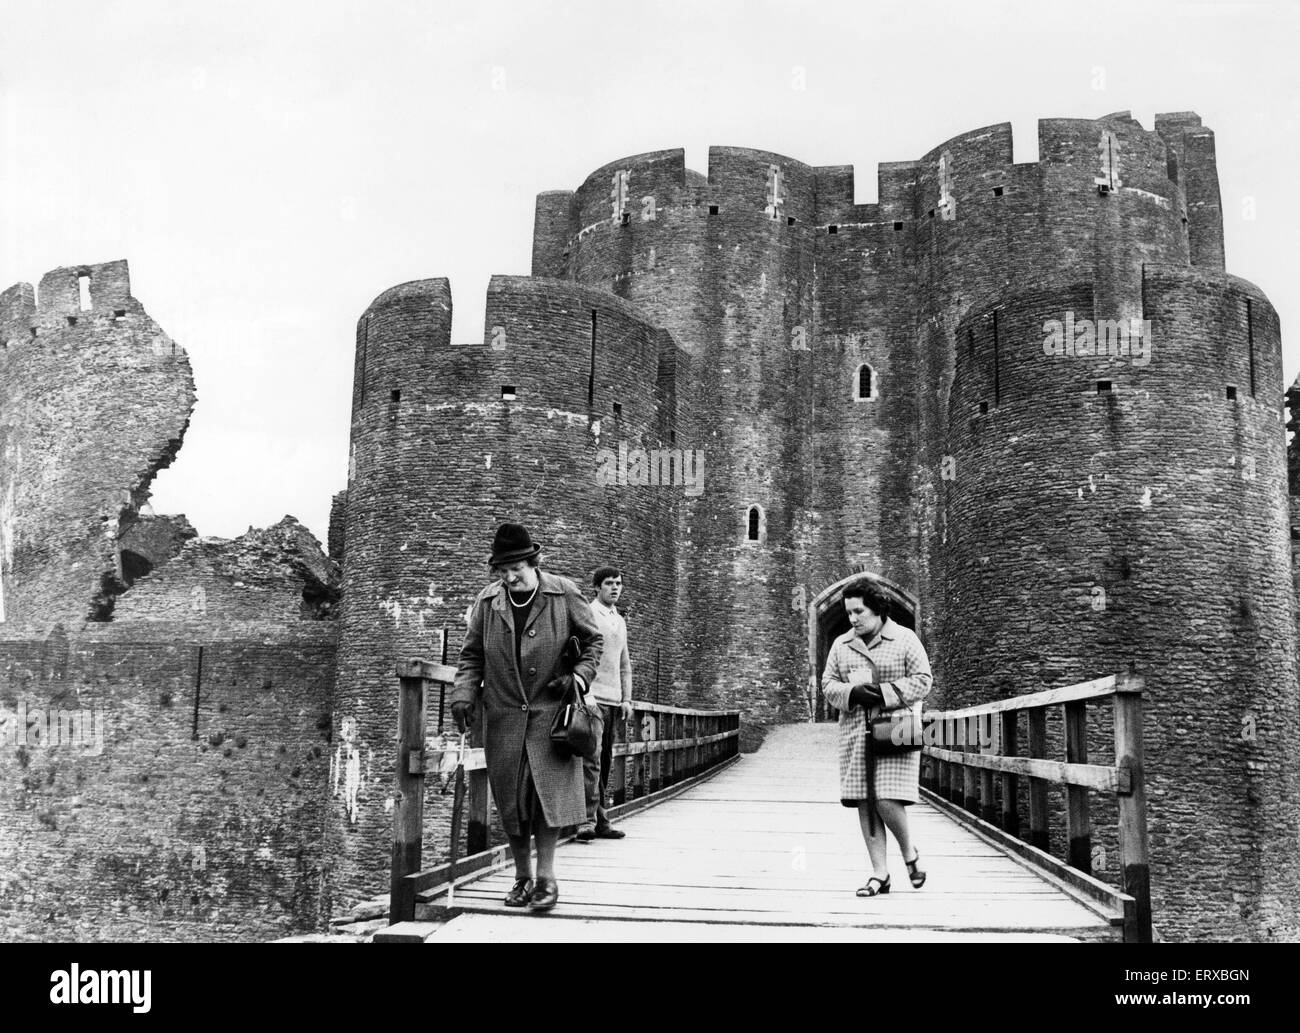 Caerphilly Castle, eine mittelalterliche Festung in Caerphilly in Südwales. 21. Mai 1968. Im Bild, die Burg berühmten Schiefen Turm auf der linken Seite. Zwei Damen gehen über die Brücke auf der Burg nach verbringen einen Nachmittag bereisen Wales die größte Burg. Stockfoto